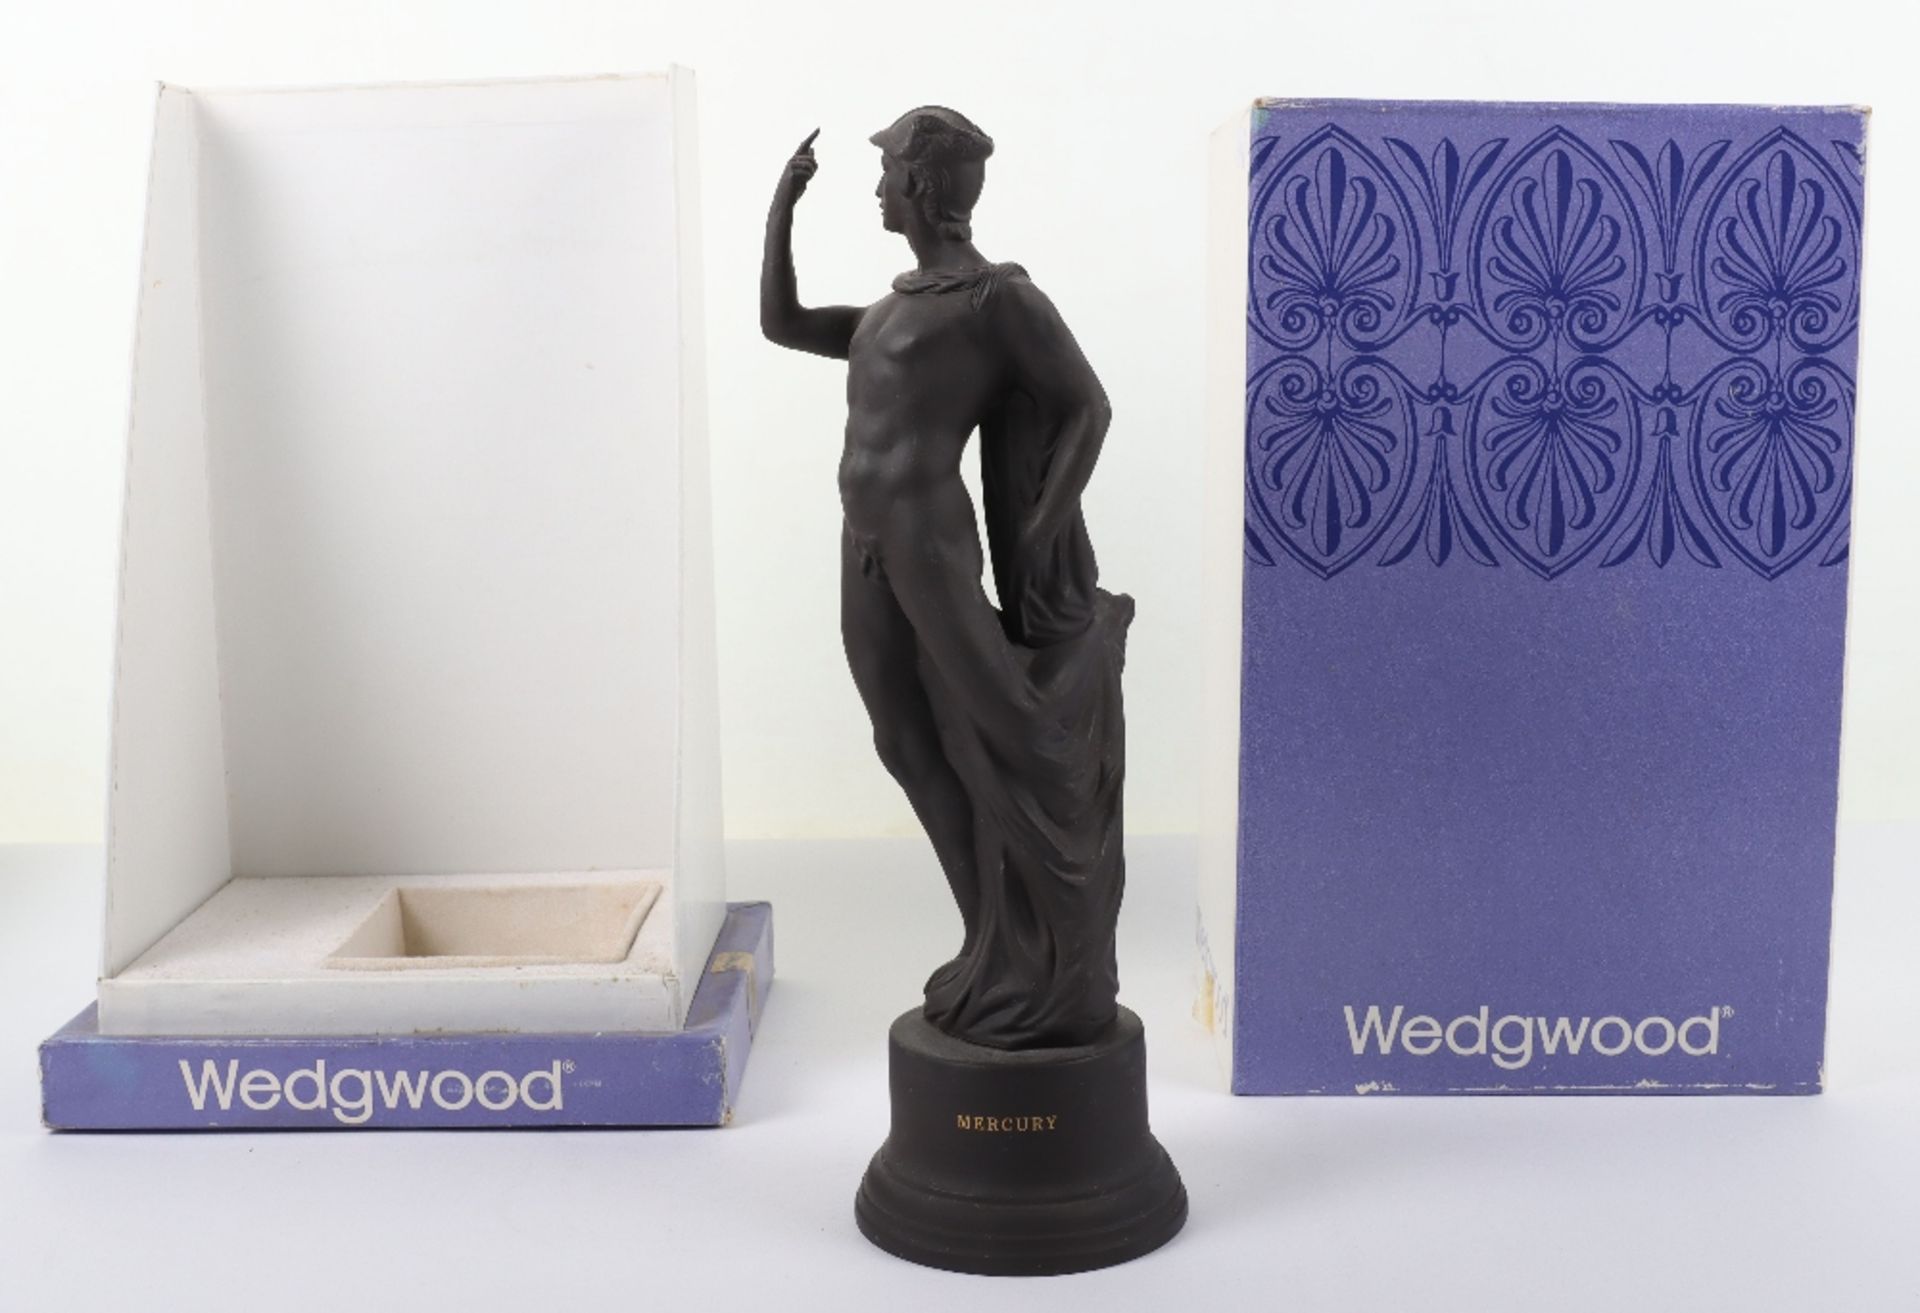 Wedgwood black basalt figurine of Mercury